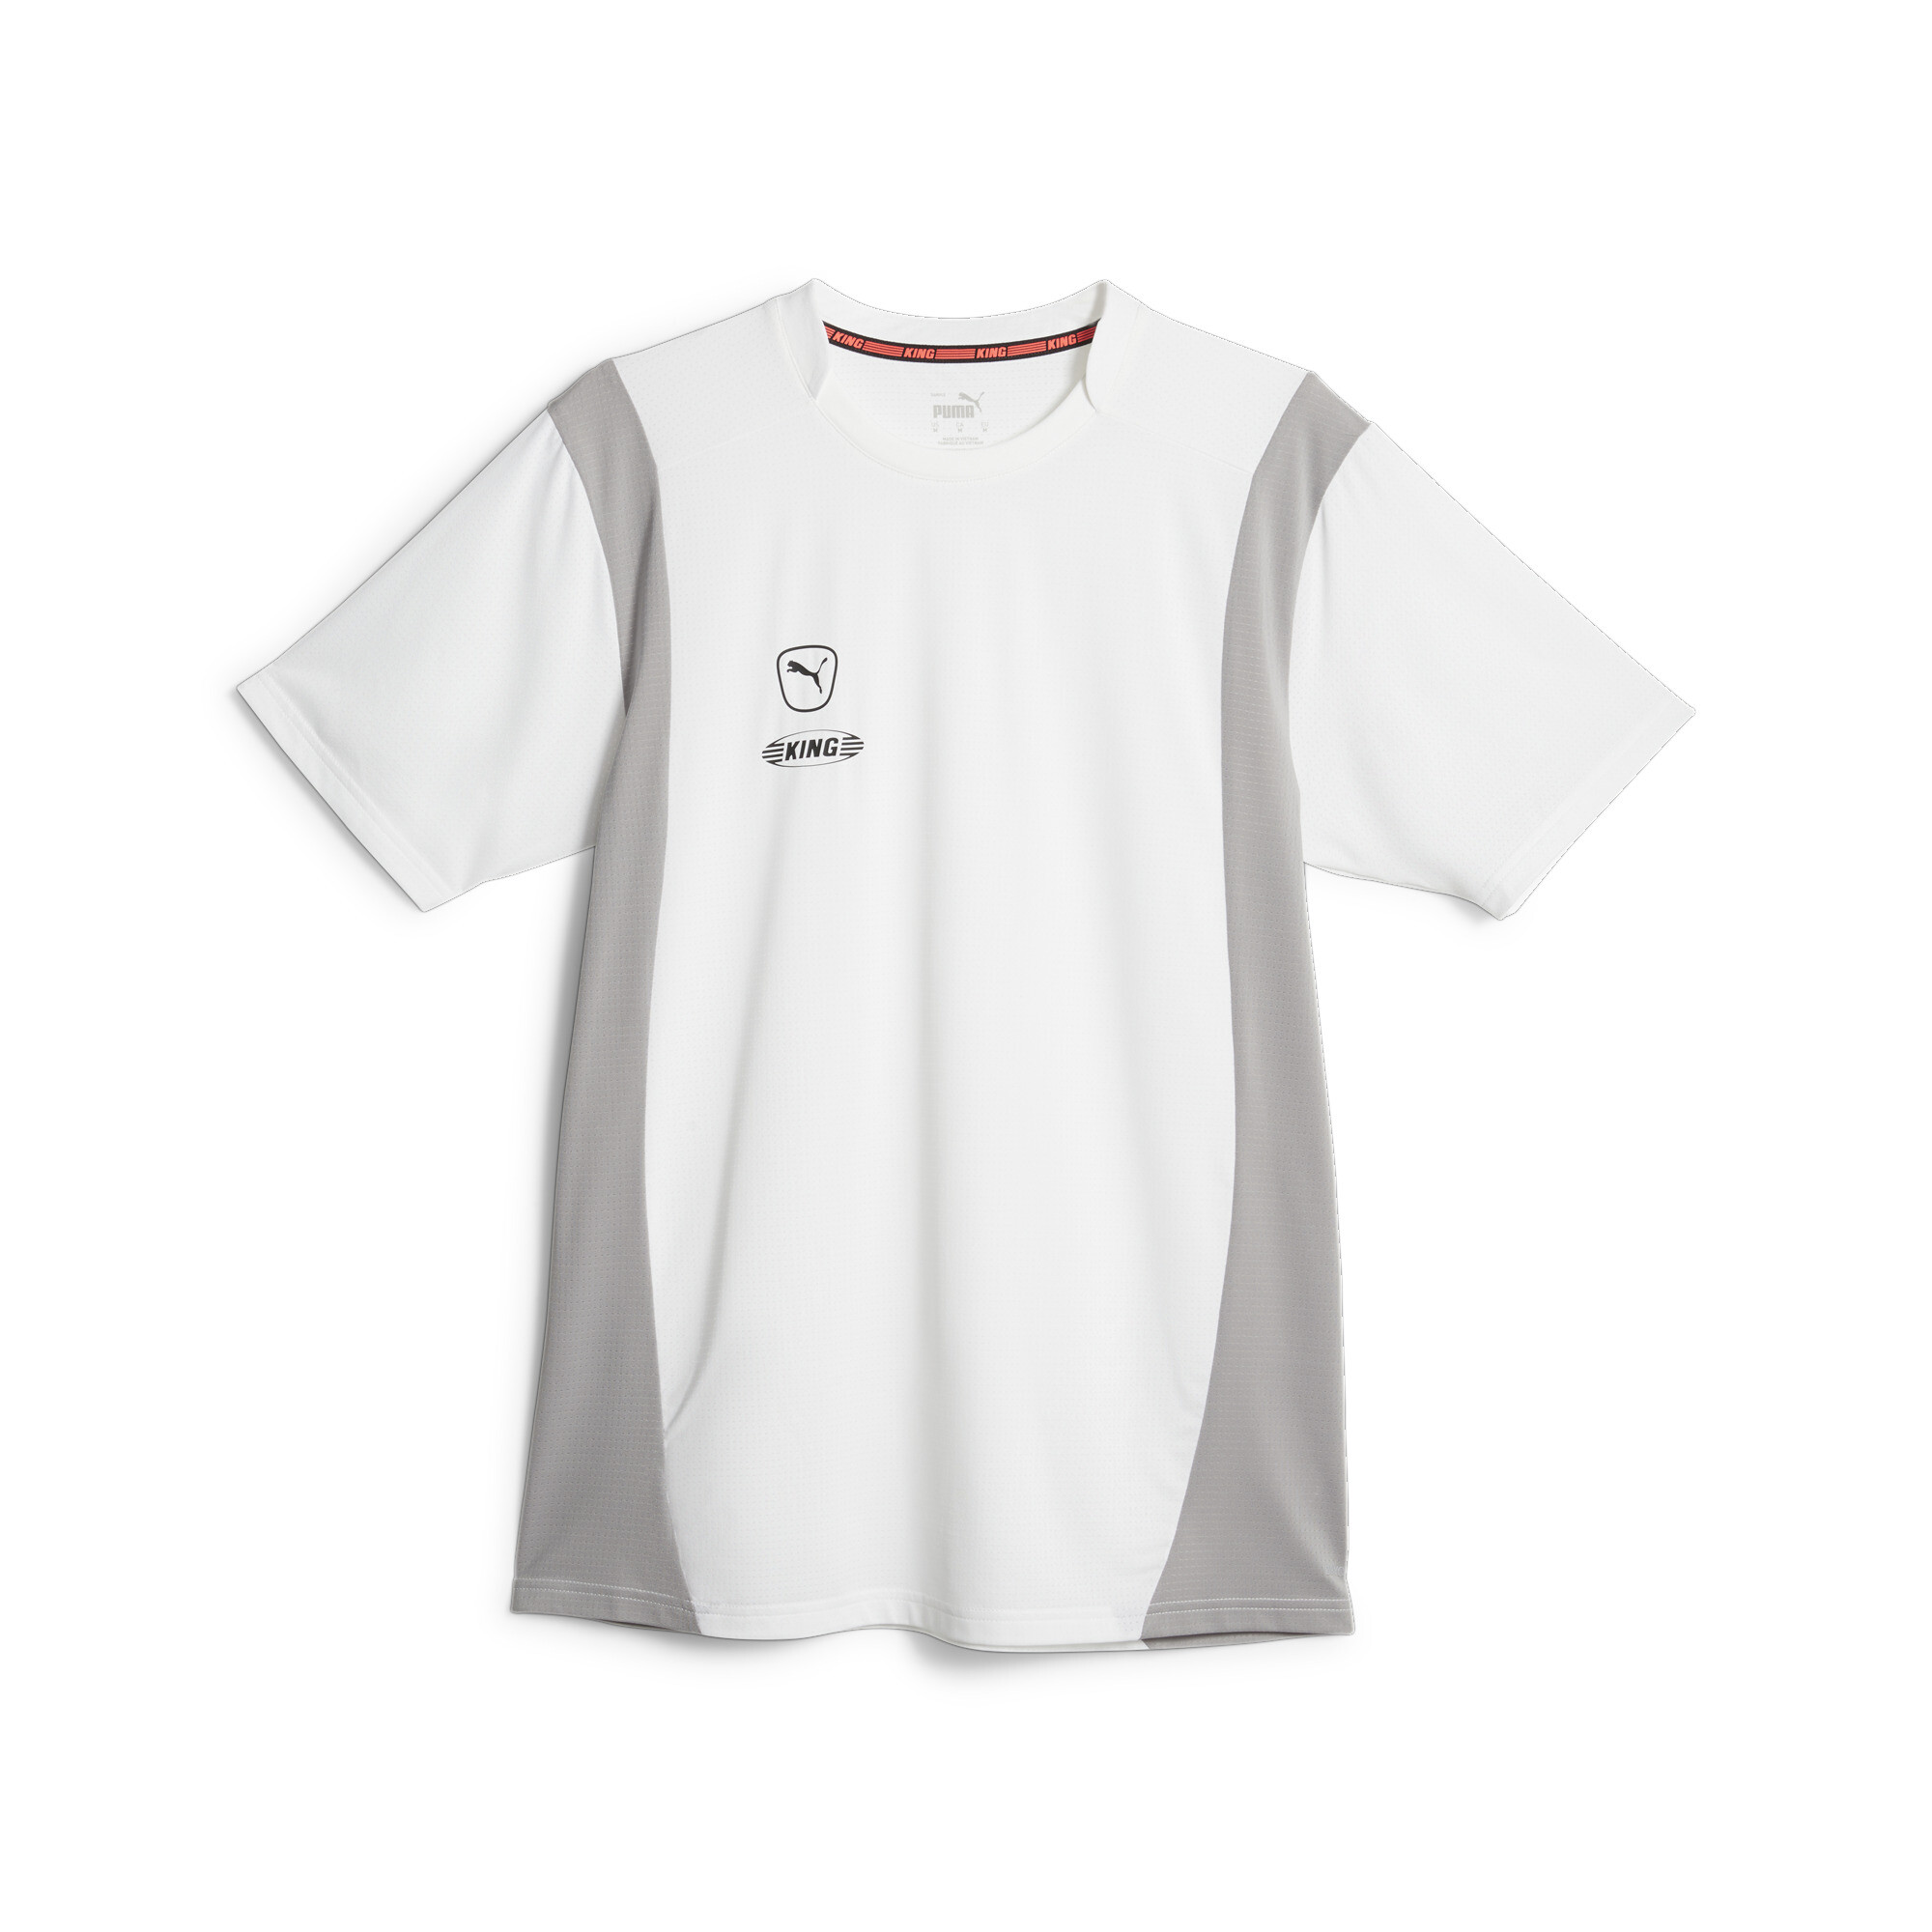 プーマ メンズ サッカー キング プロ Tシャツ メンズ PUMA White-Concrete Gray ｜PUMA.comの大画像